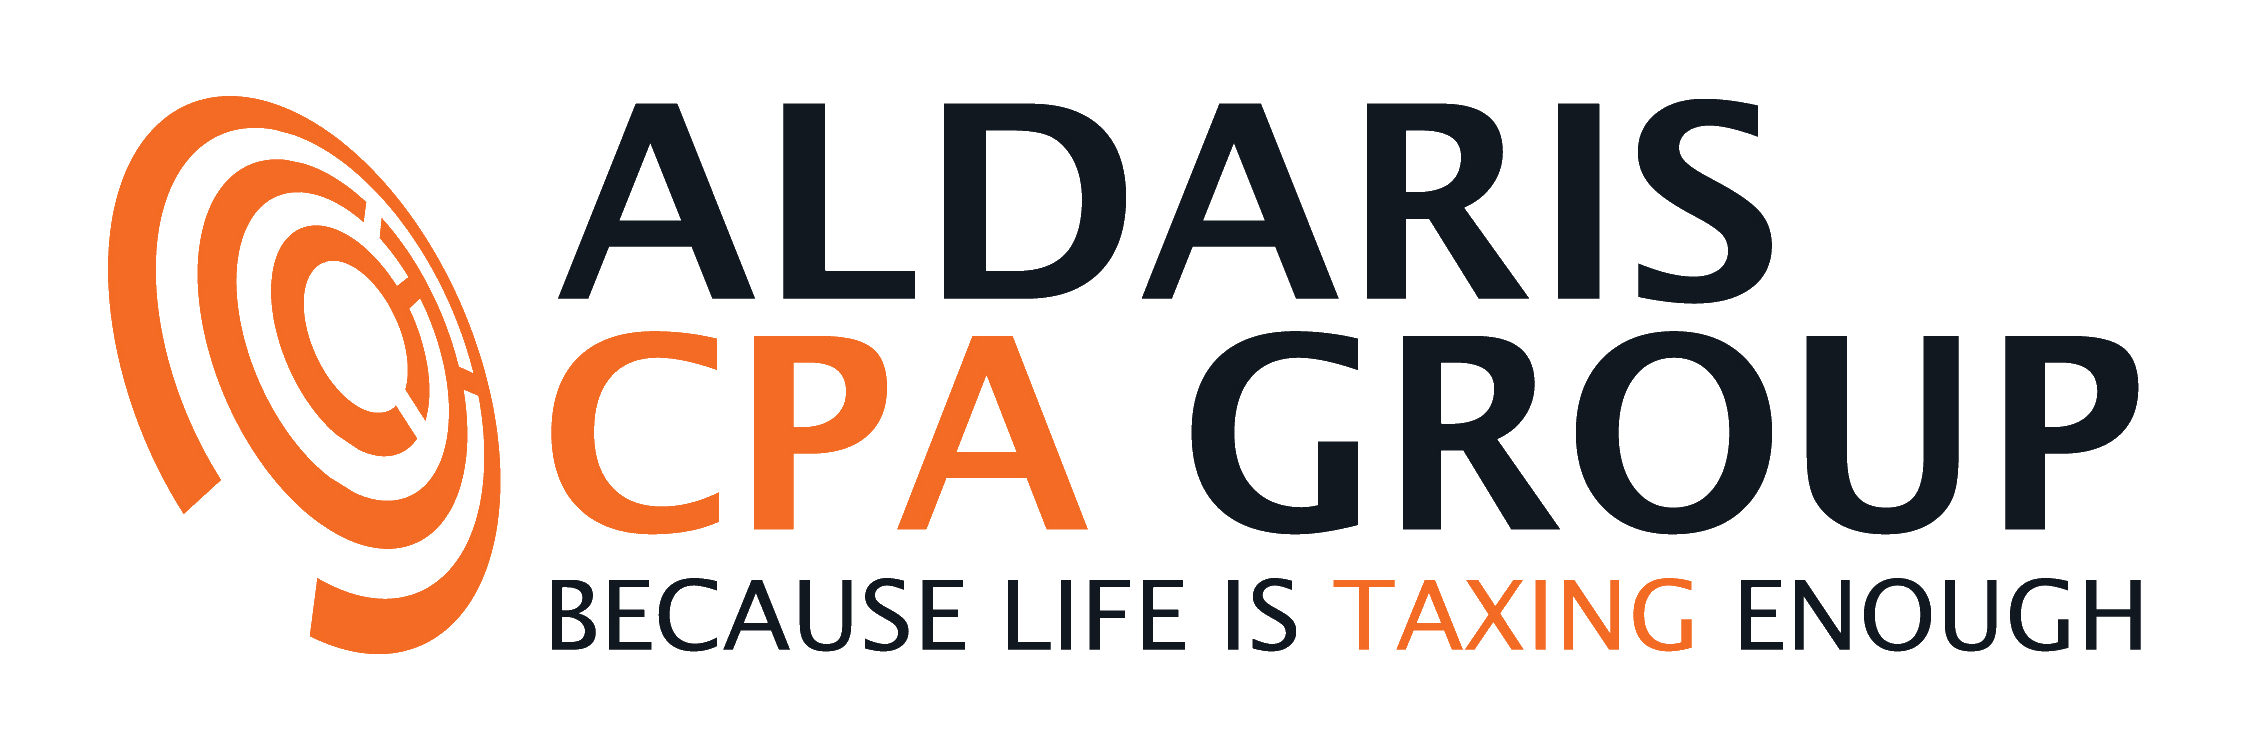 Aldaris CPA Firm McAllen's Logo